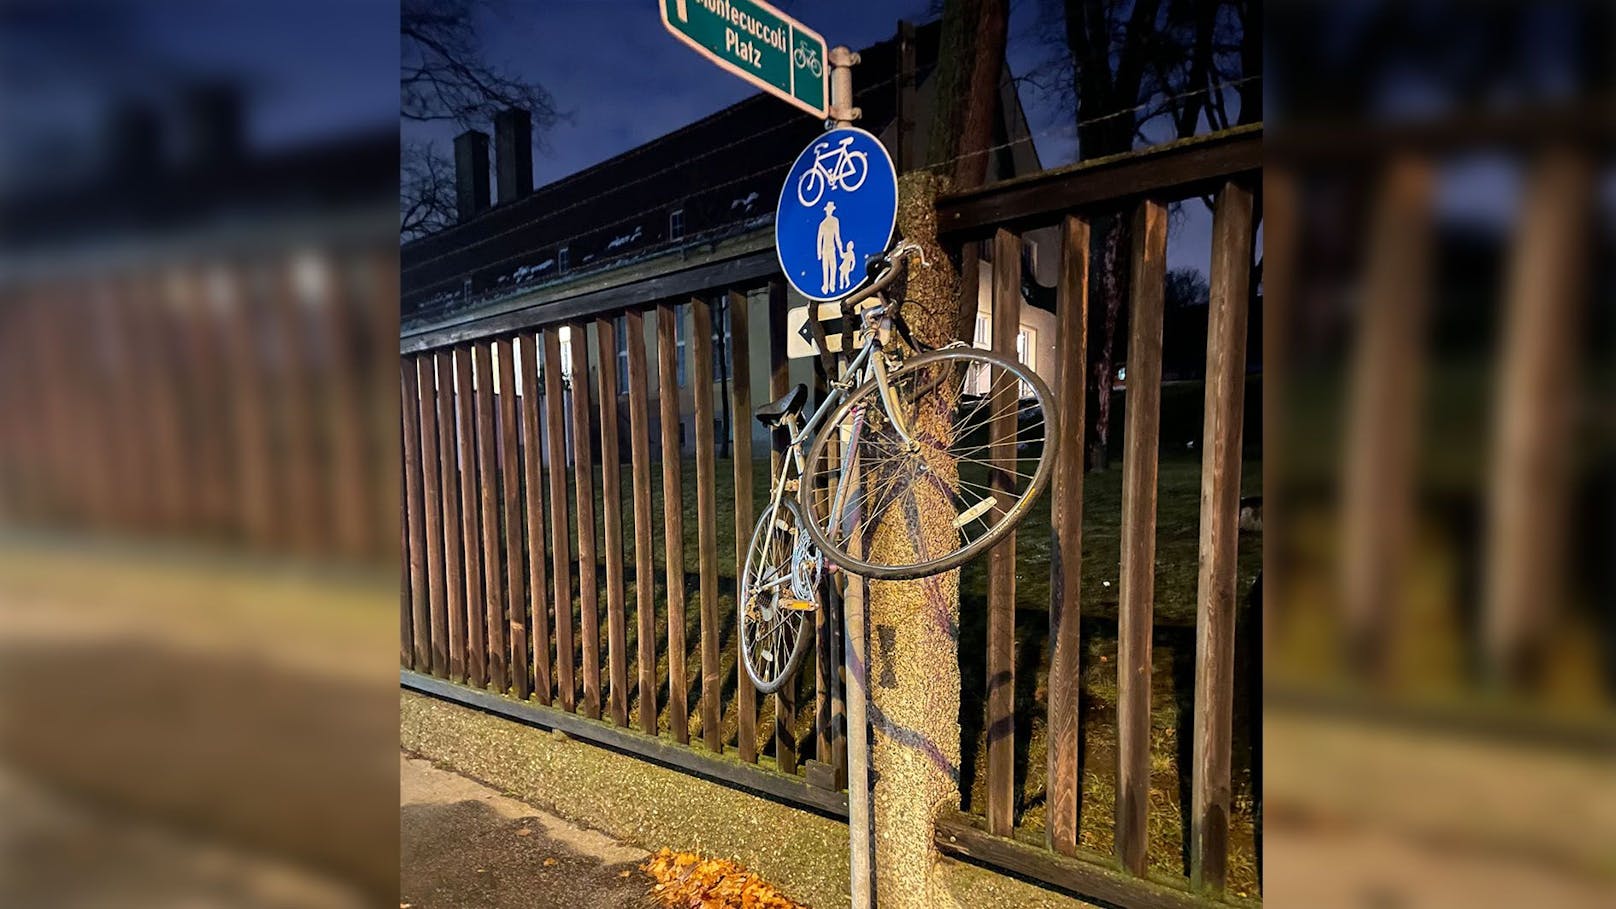 So sicherte ein Wiener sein Fahrrad gegen Diebstahl. <a href="https://www.heute.at/s/gegen-diebstahl-gesichert-meidlinger-haengt-rad-auf-100177708">Weiterlesen&gt;&gt;&gt;</a>